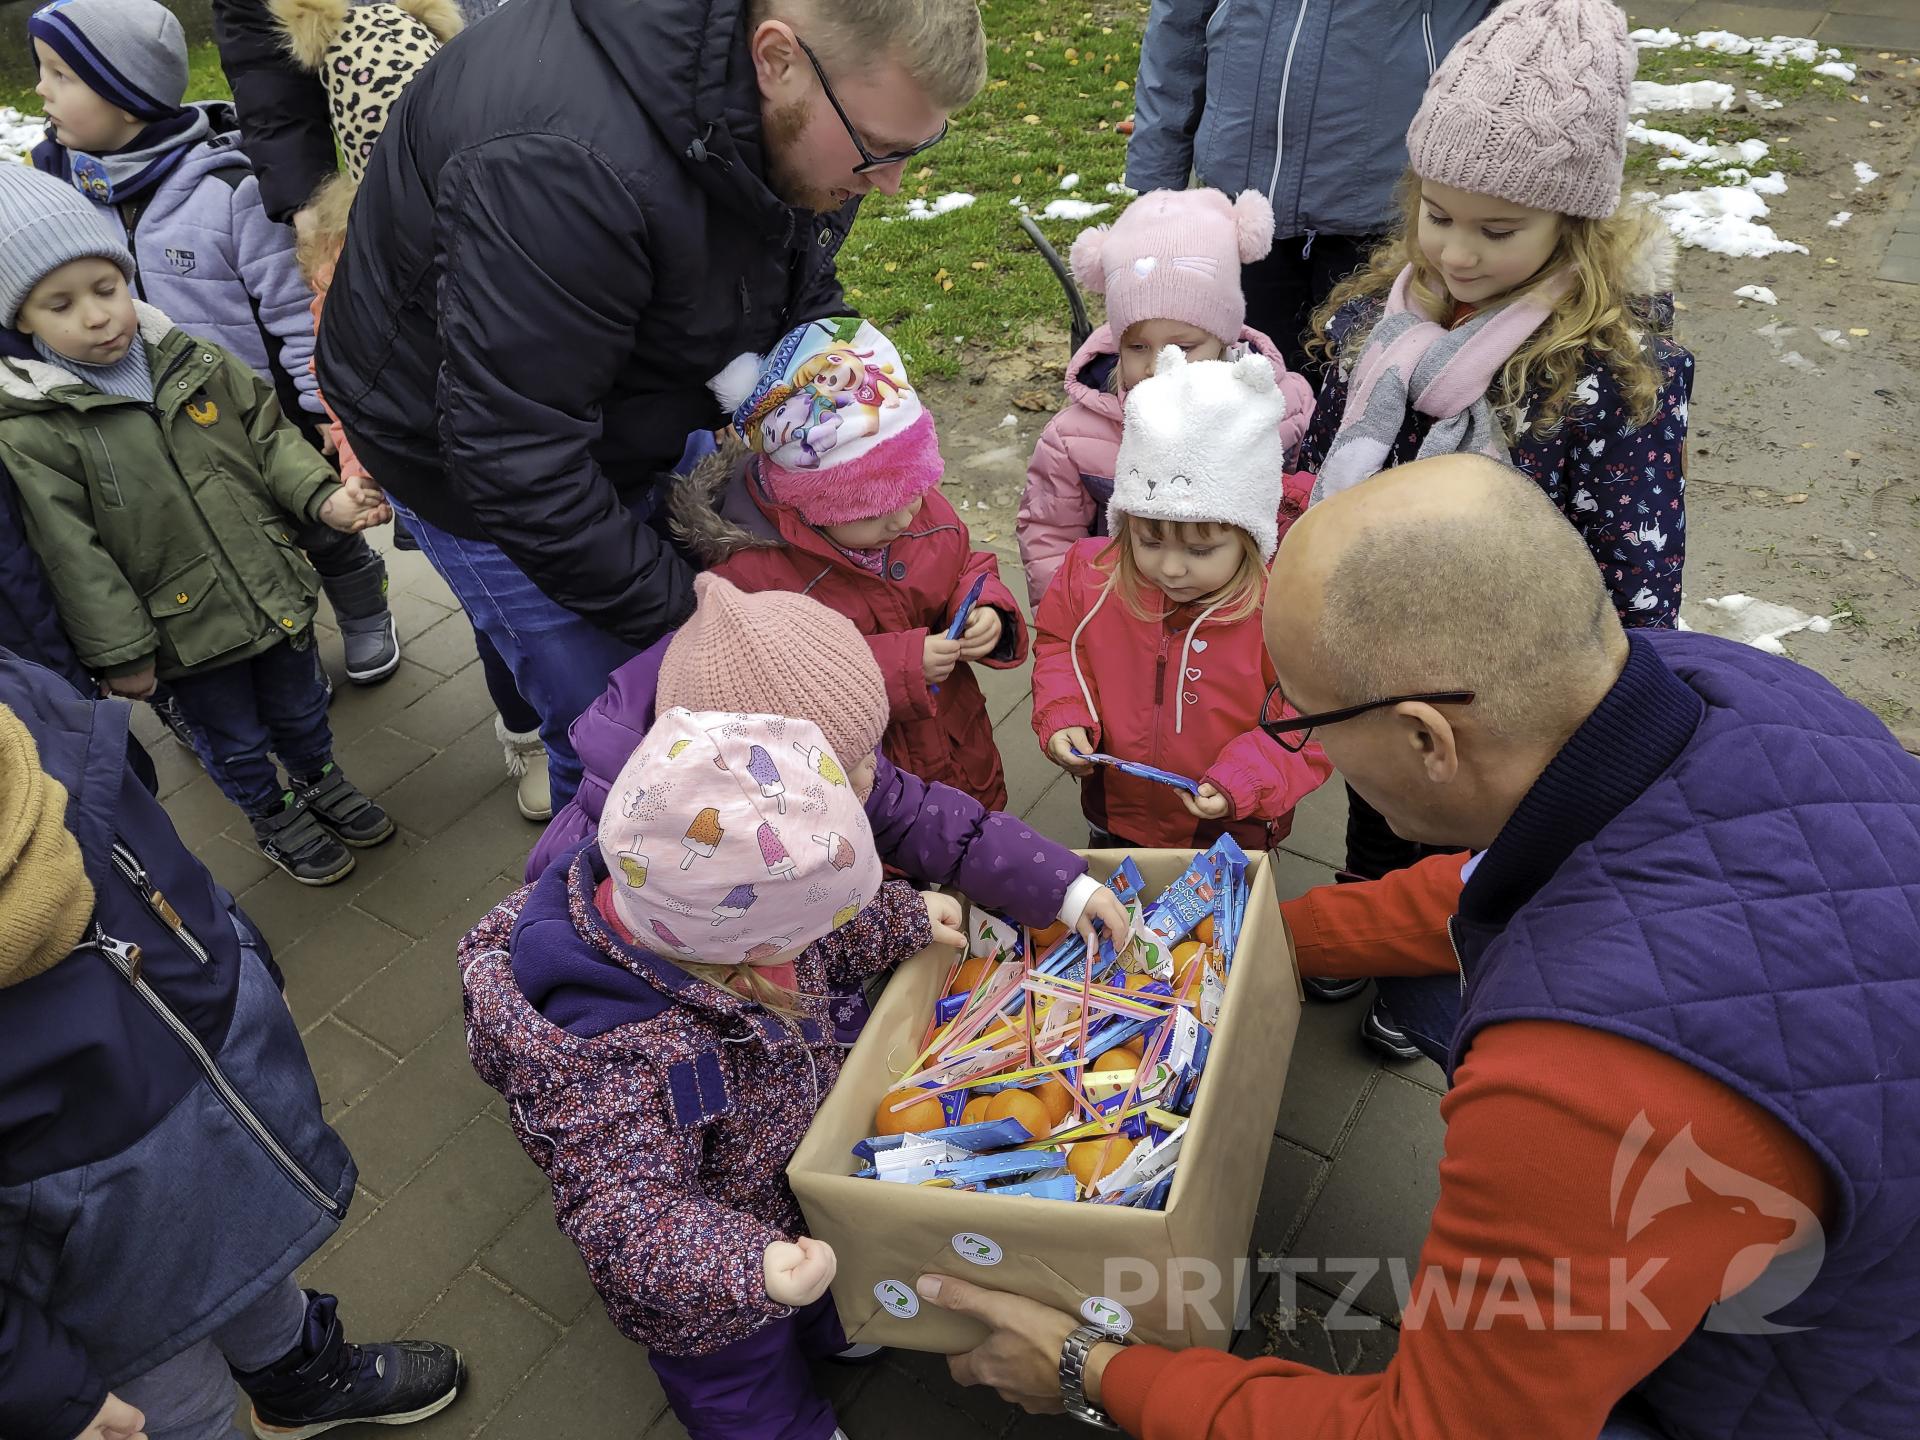 Der Bürgermeister hatte kleine Überraschungen für die Kinder dabei. Foto: Beate Vogel